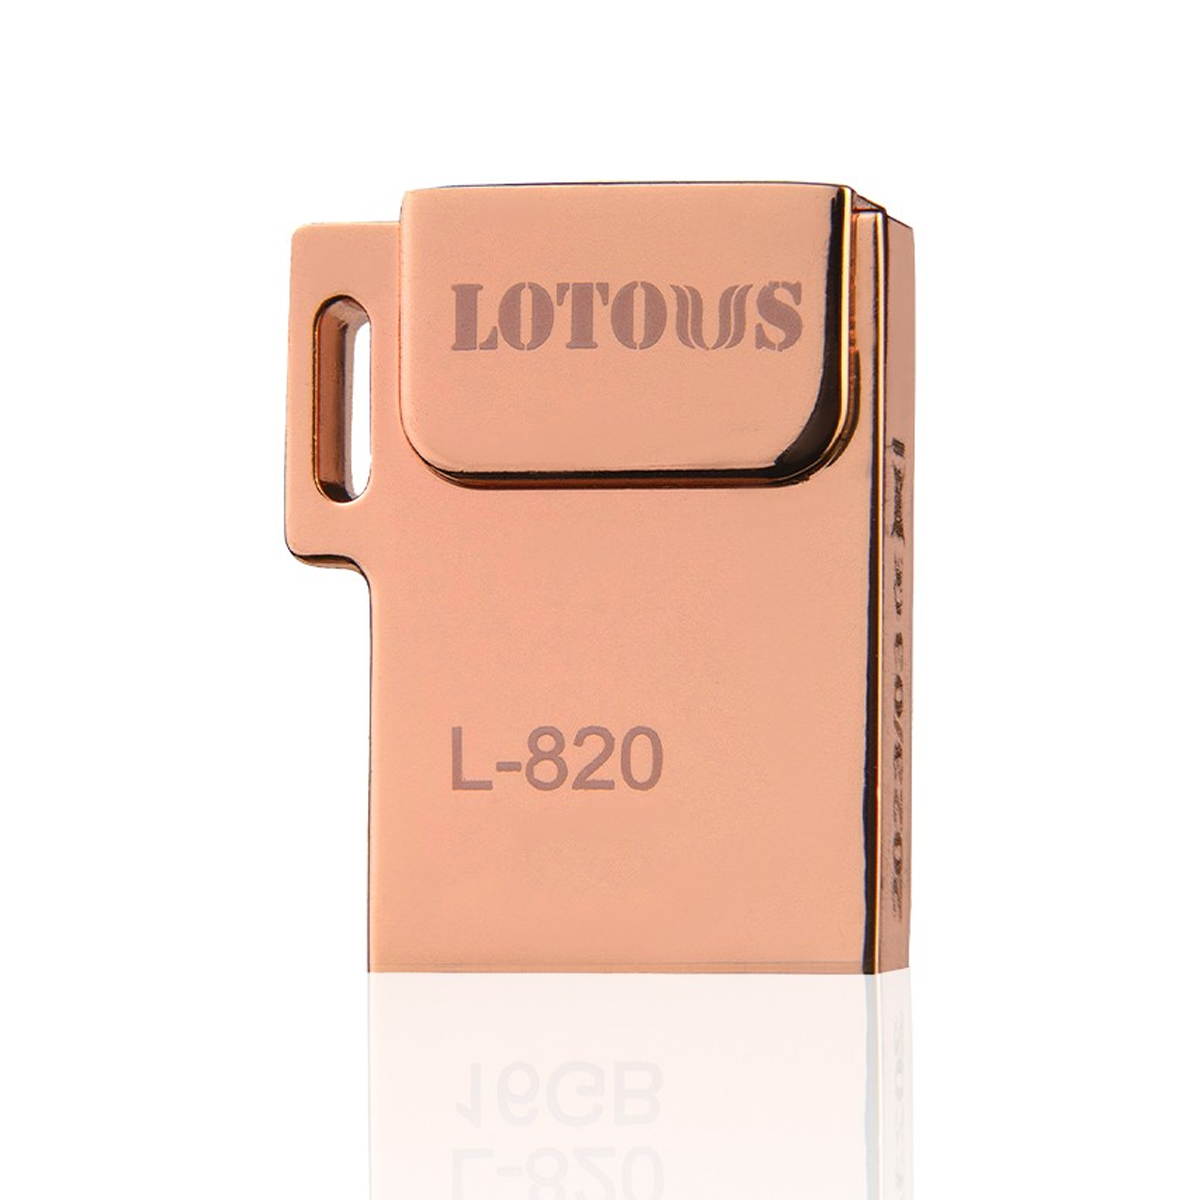 فلش مموری لوتوس مدل L-820 ظرفیت 8 گیگابایت